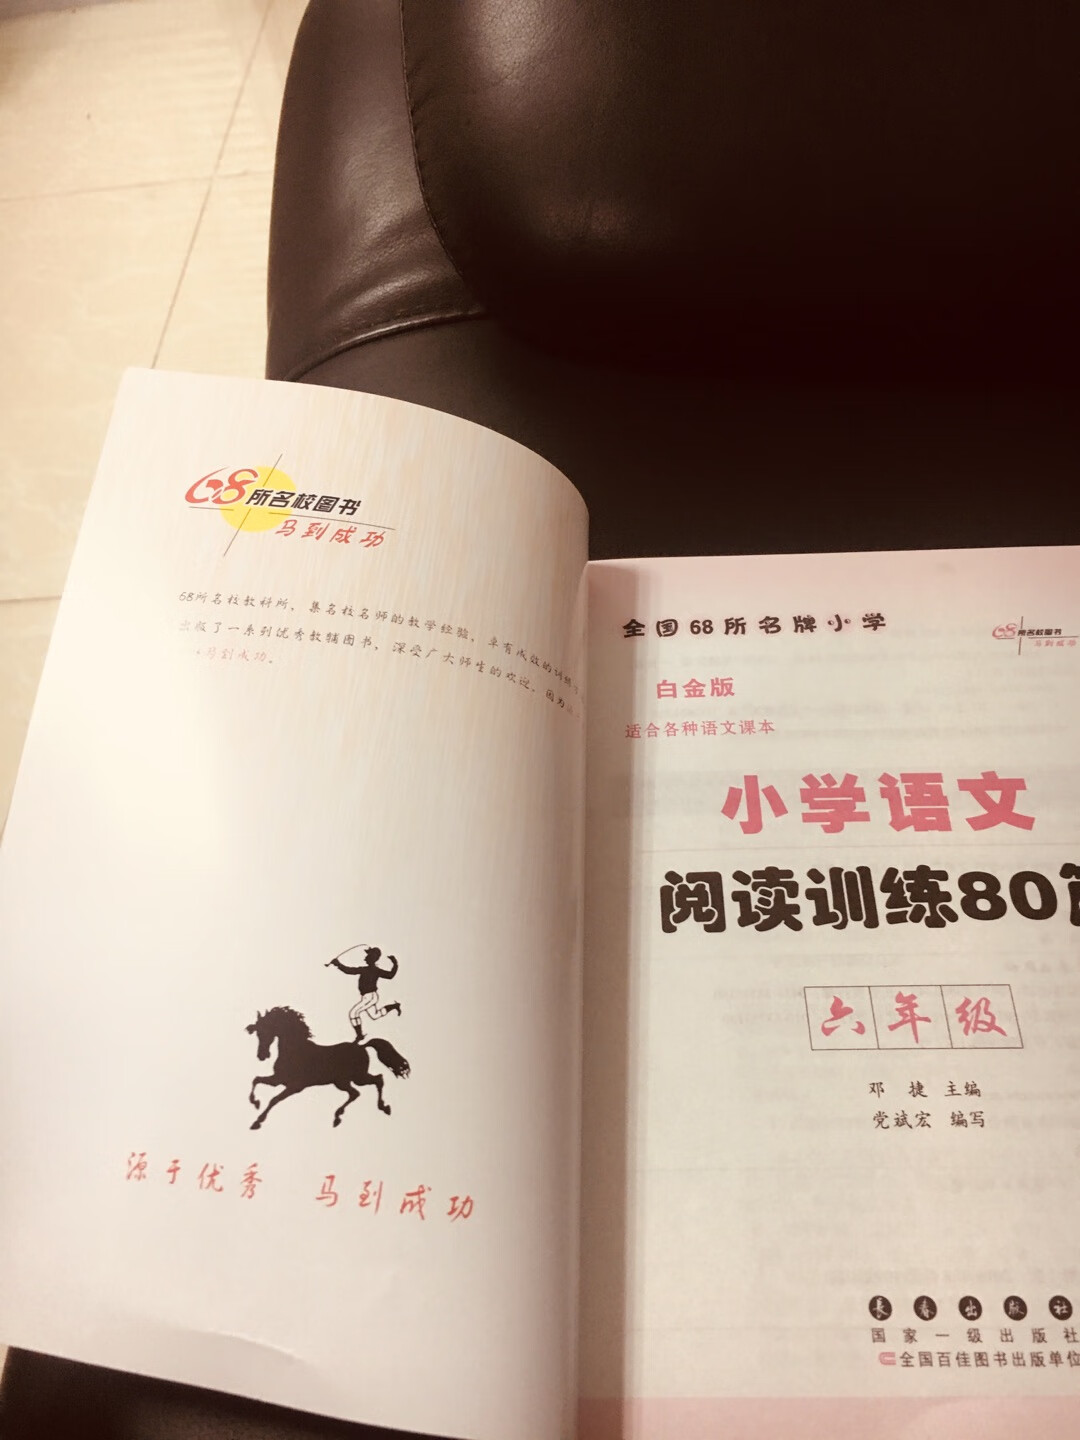 北京到广东隔天就到了，自营的就是快。买了几本书，这个假期可以慢慢细细的读了。书本的印刷和纸张质量都非常好，喜欢！